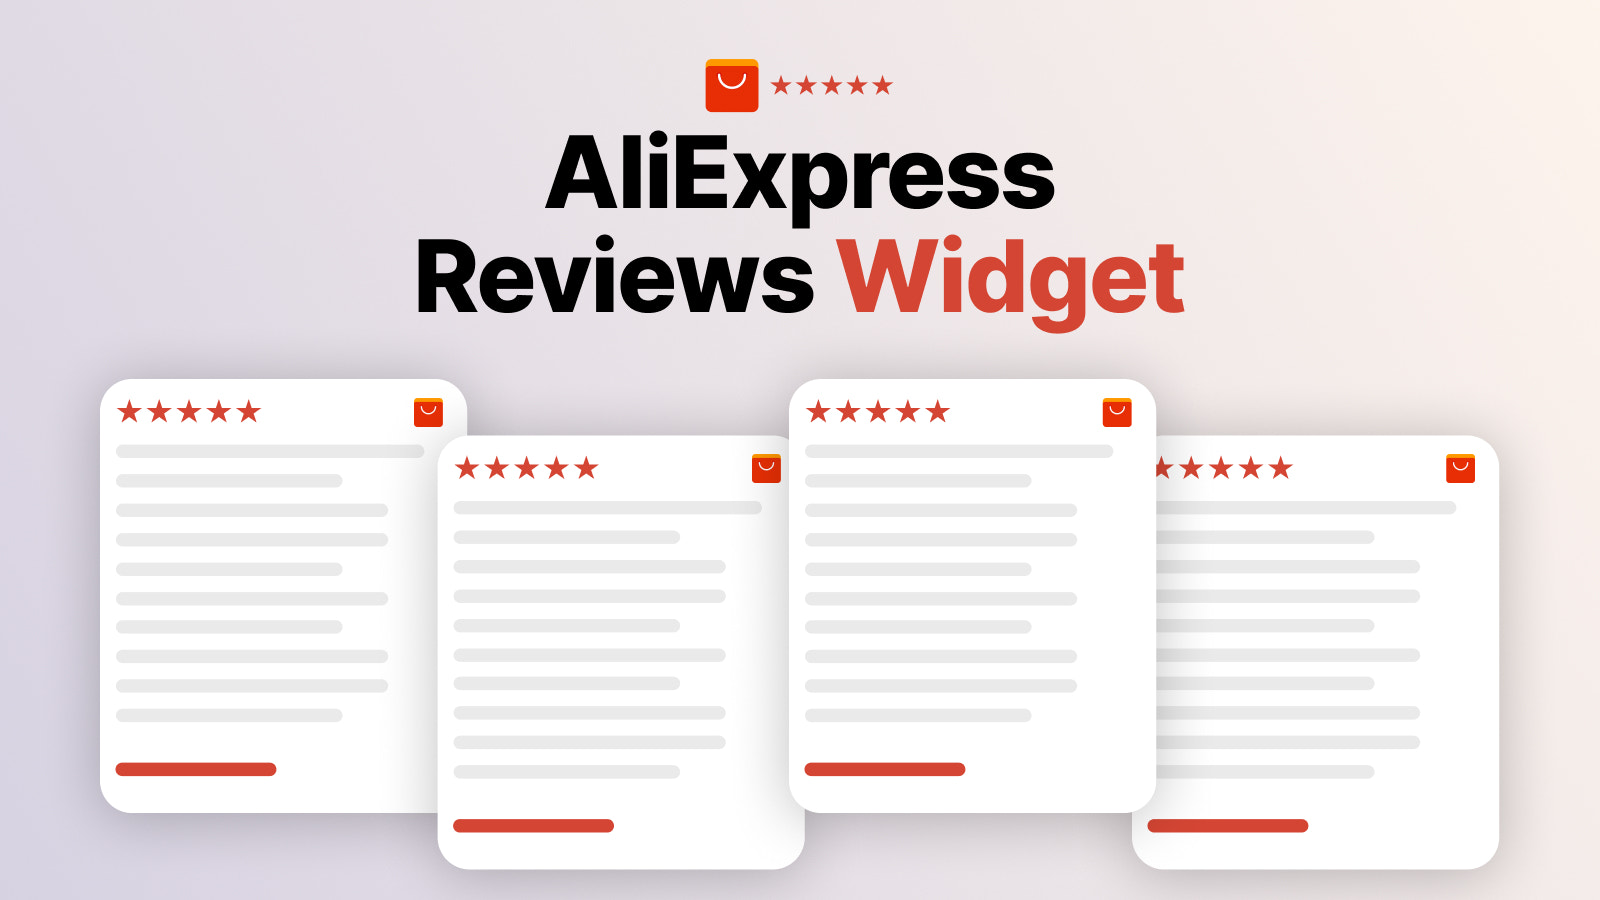 Aliexpress reviews widget